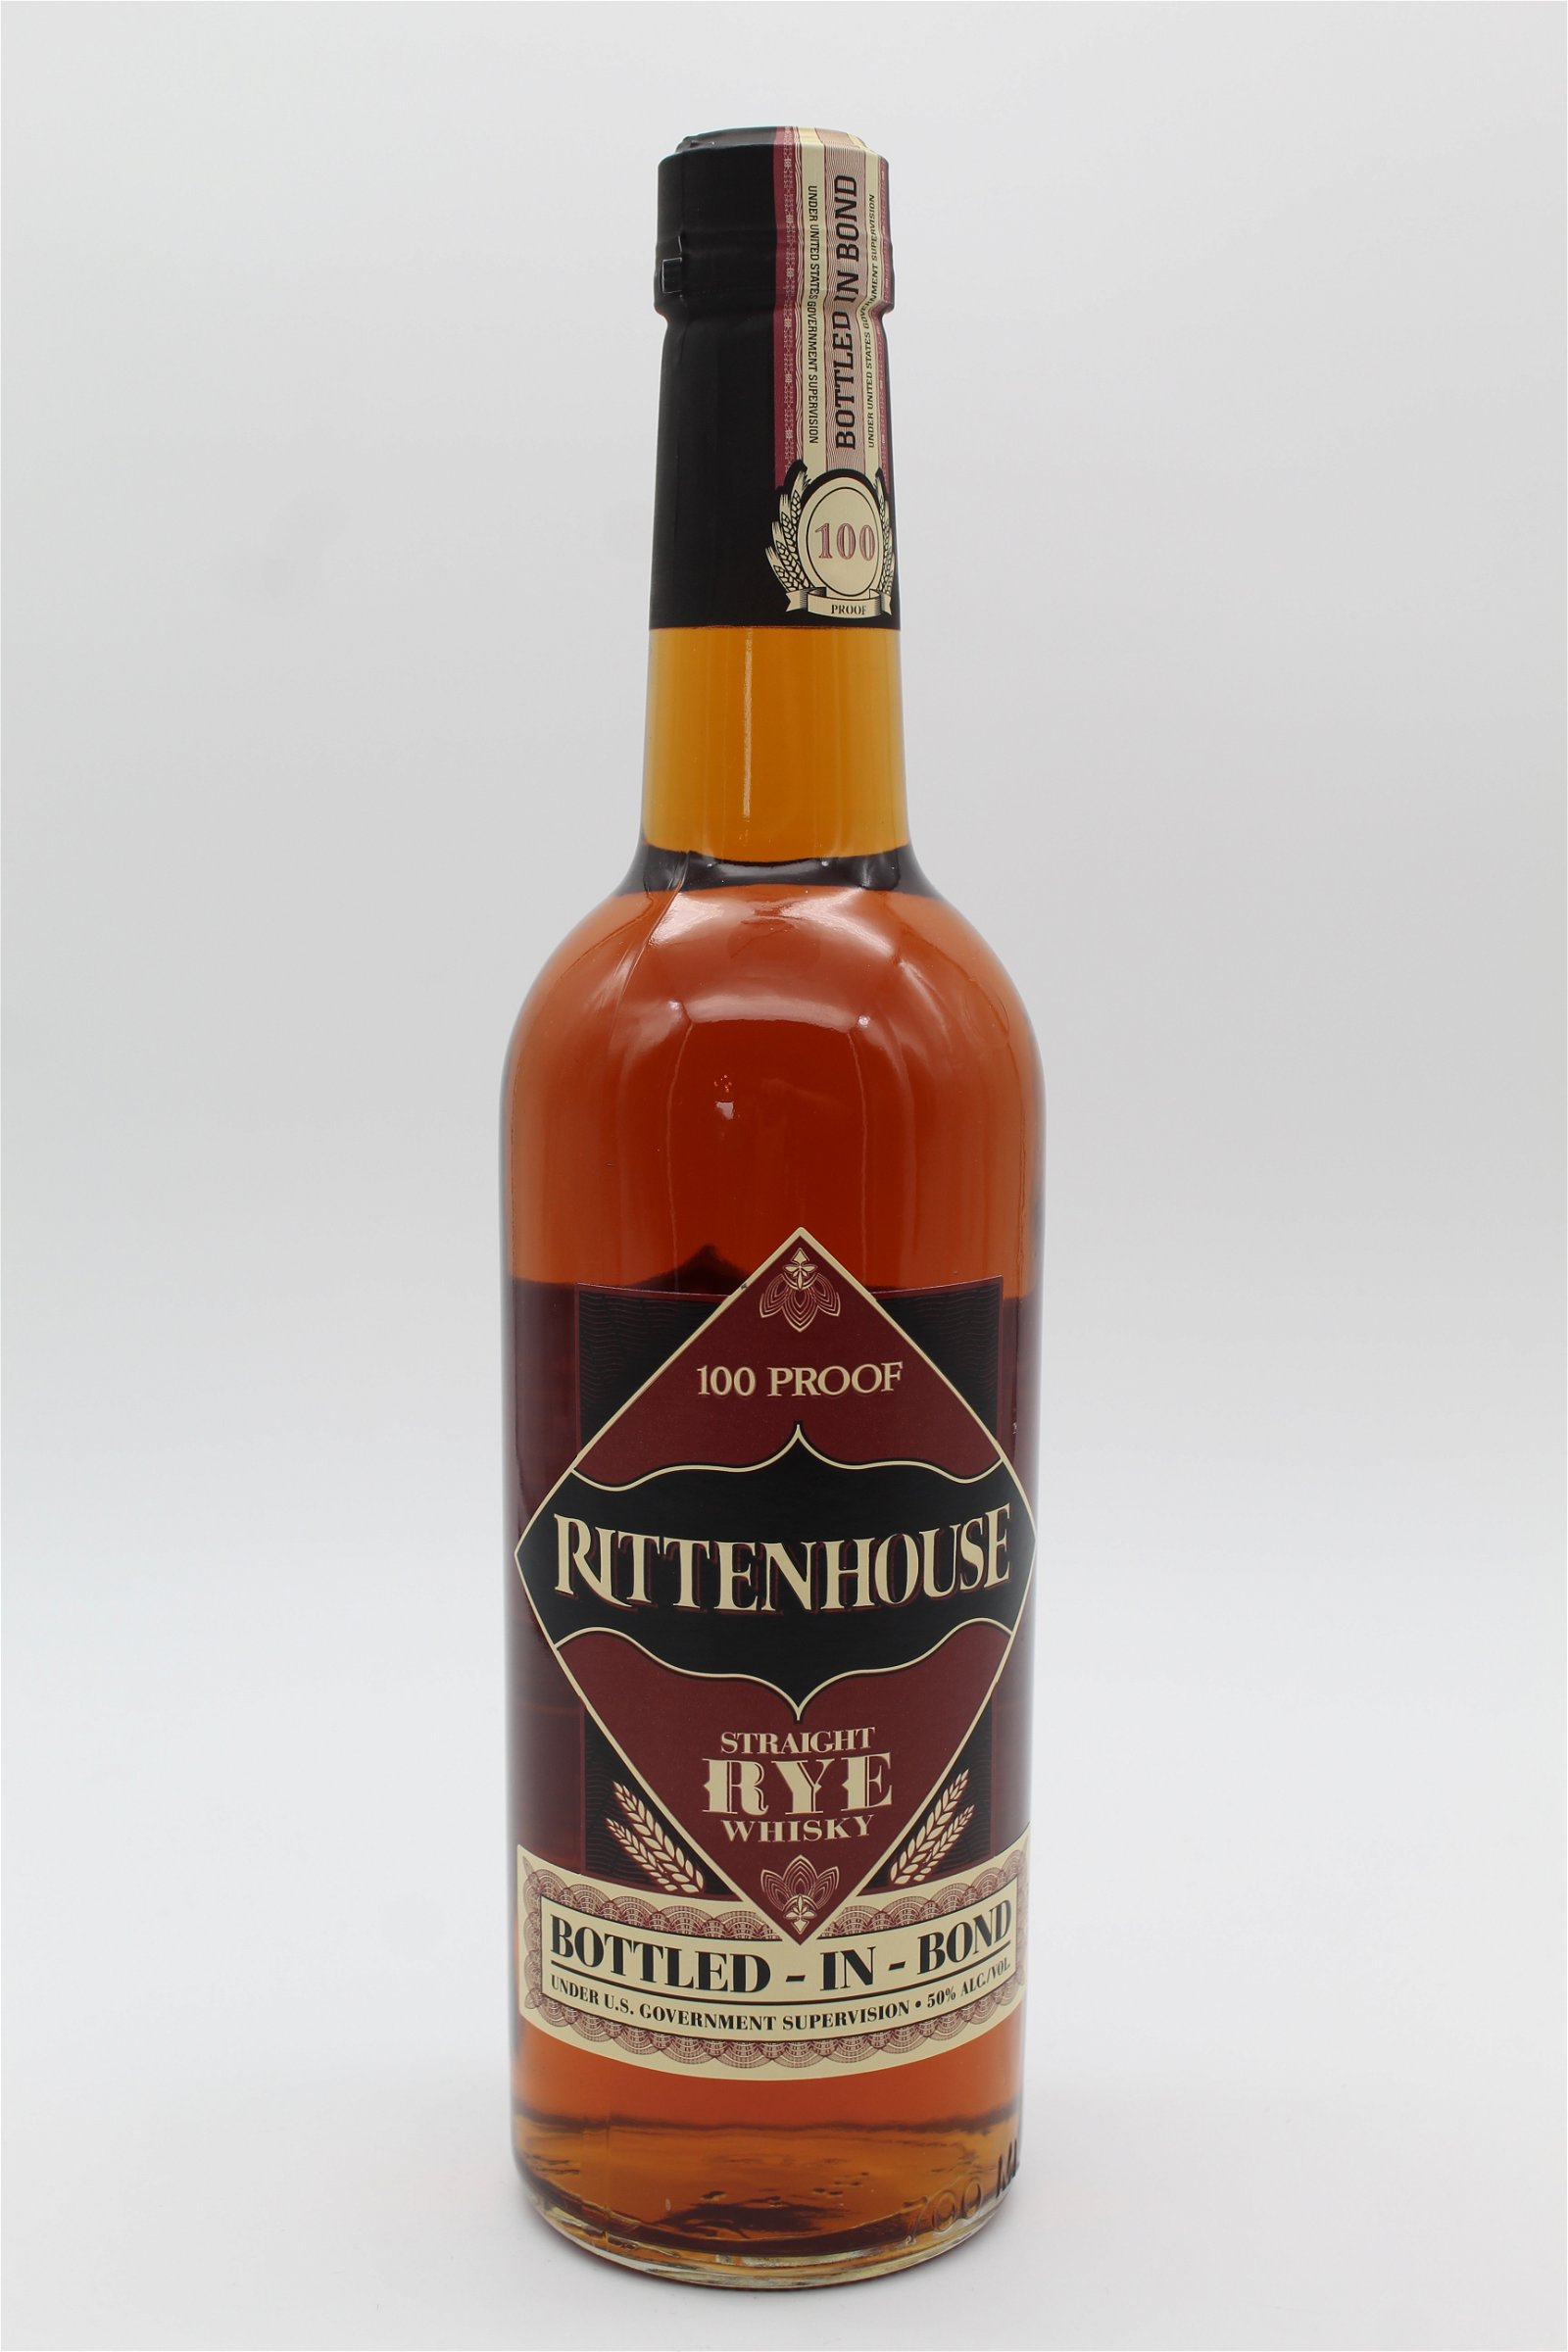 Rittenhouse Bottled In Bond Straight Rye Whisky 100 Proof